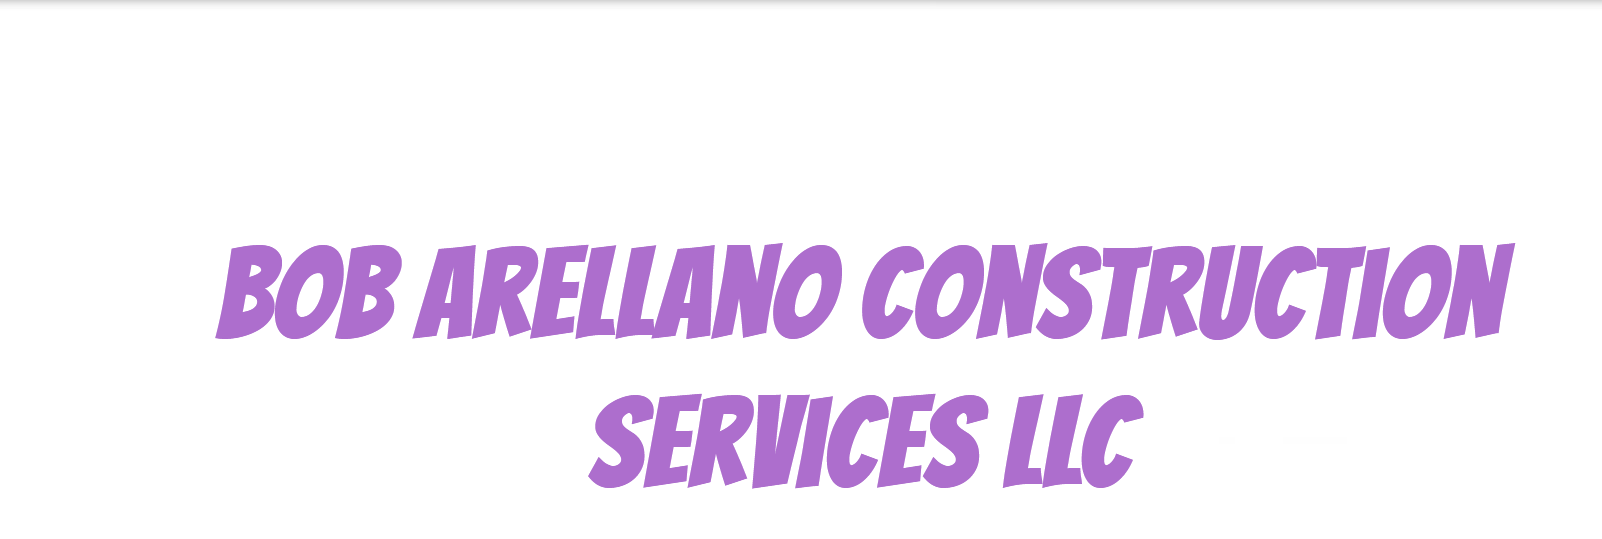 Bob Arellano Construction Services, LLC Logo